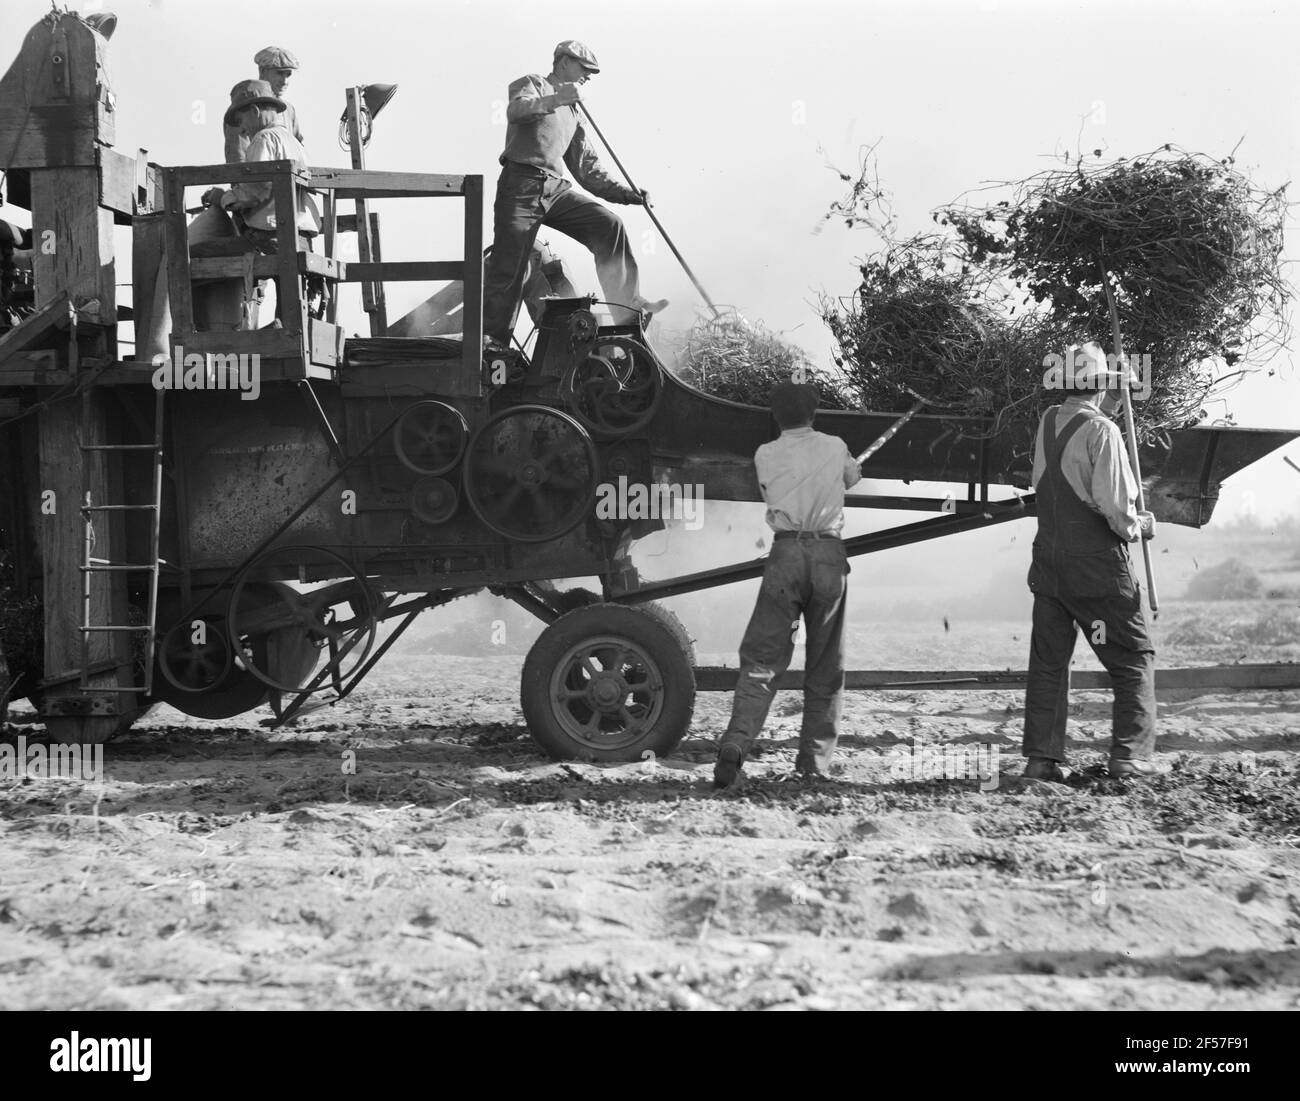 Batteur à haricots. Agriculture mécanisée entre Turlock et Merced, Californie. Novembre 1936. Photo de Dorothea Lange. Banque D'Images